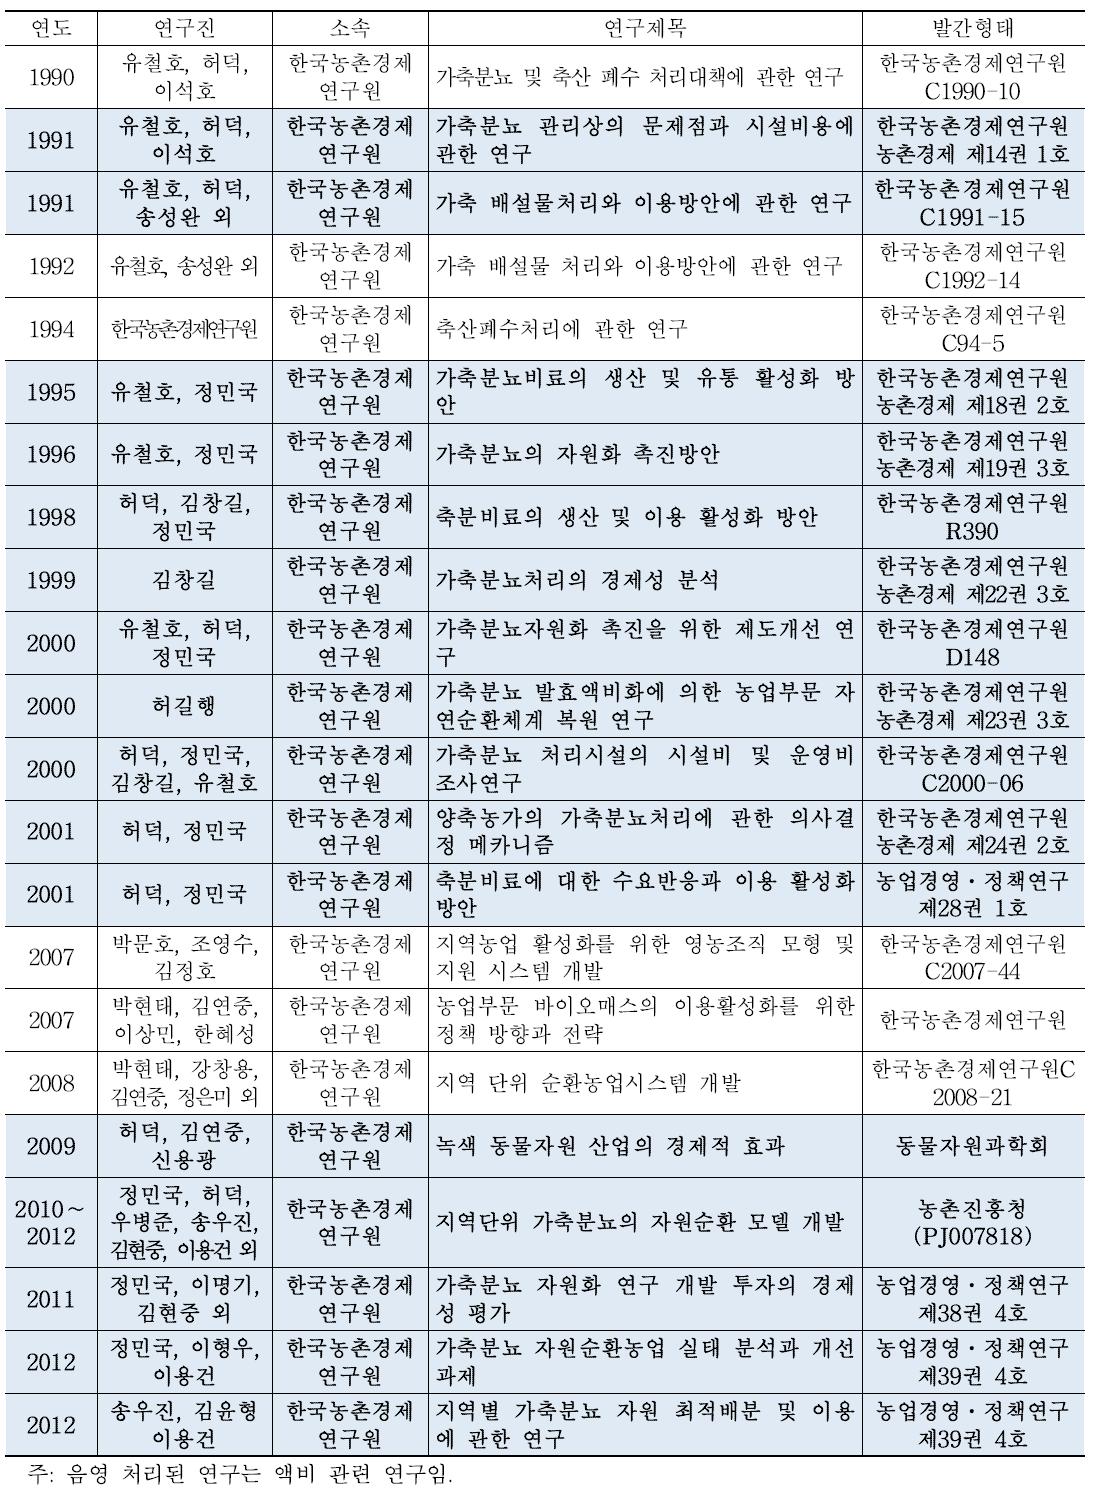 한국농촌경제연구원에서 수행한 가축분뇨 관련 연구 현황